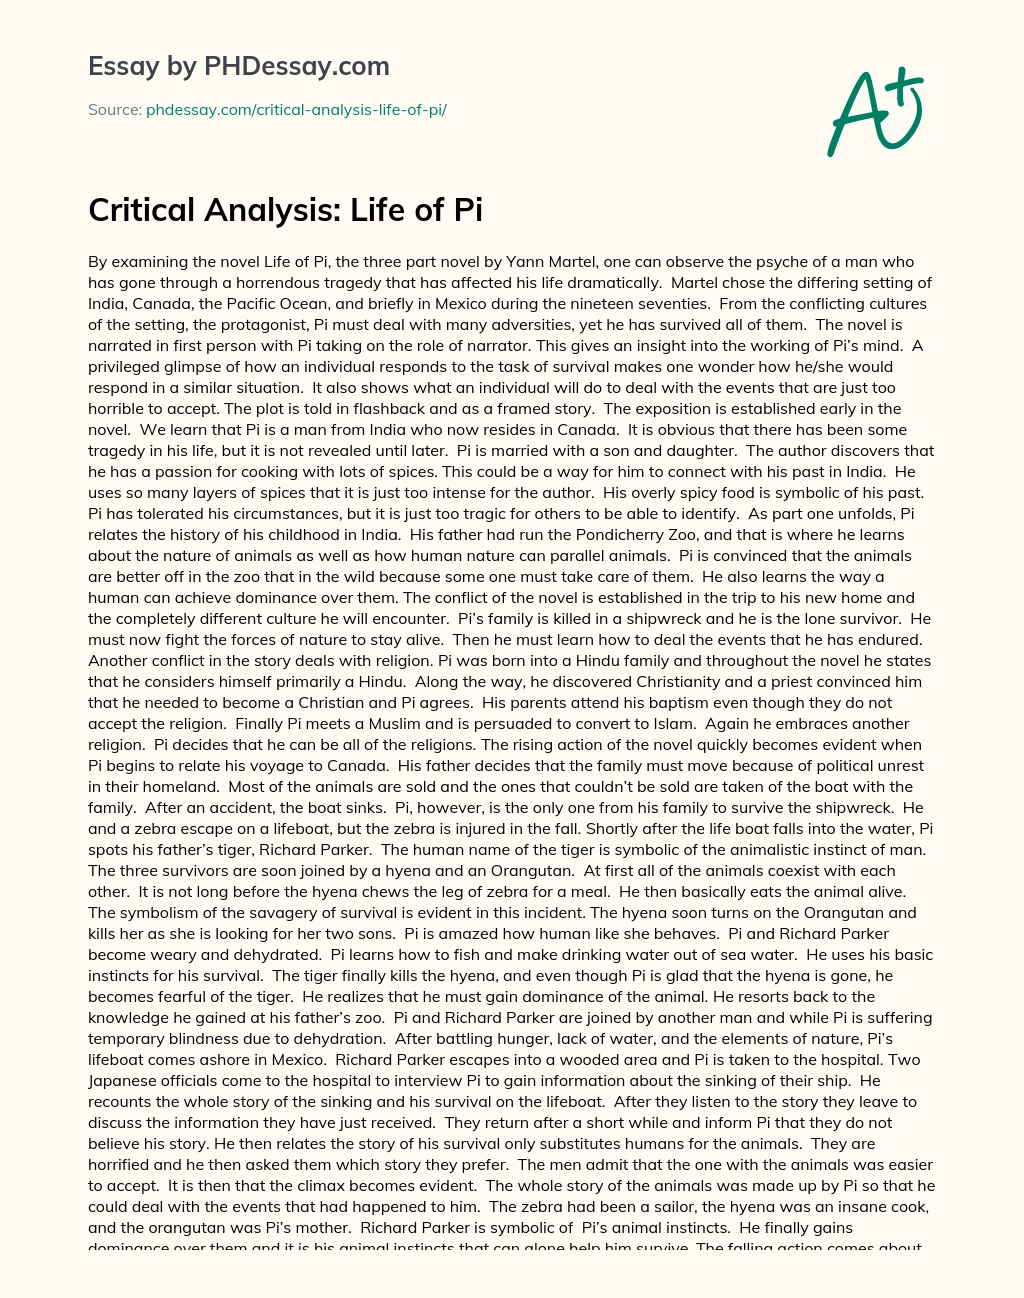 Critical Analysis: Life of Pi essay